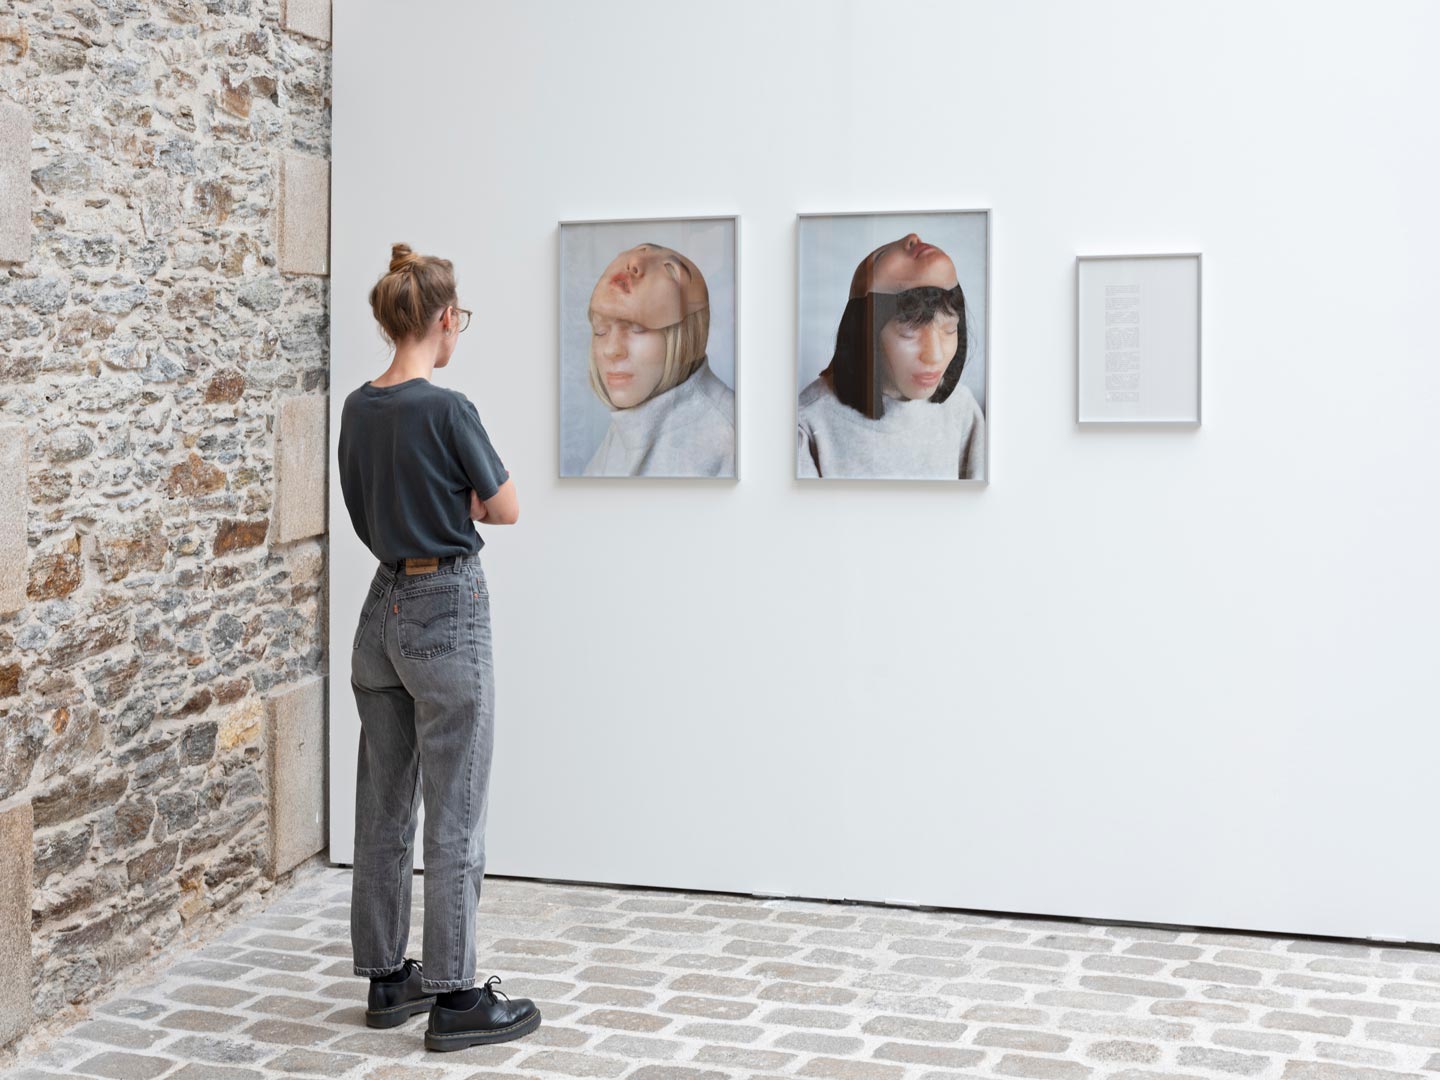 Vues d'exposition montrant une personne regardant un ensemble de deux photographies de grand format accompagné d’un texte.